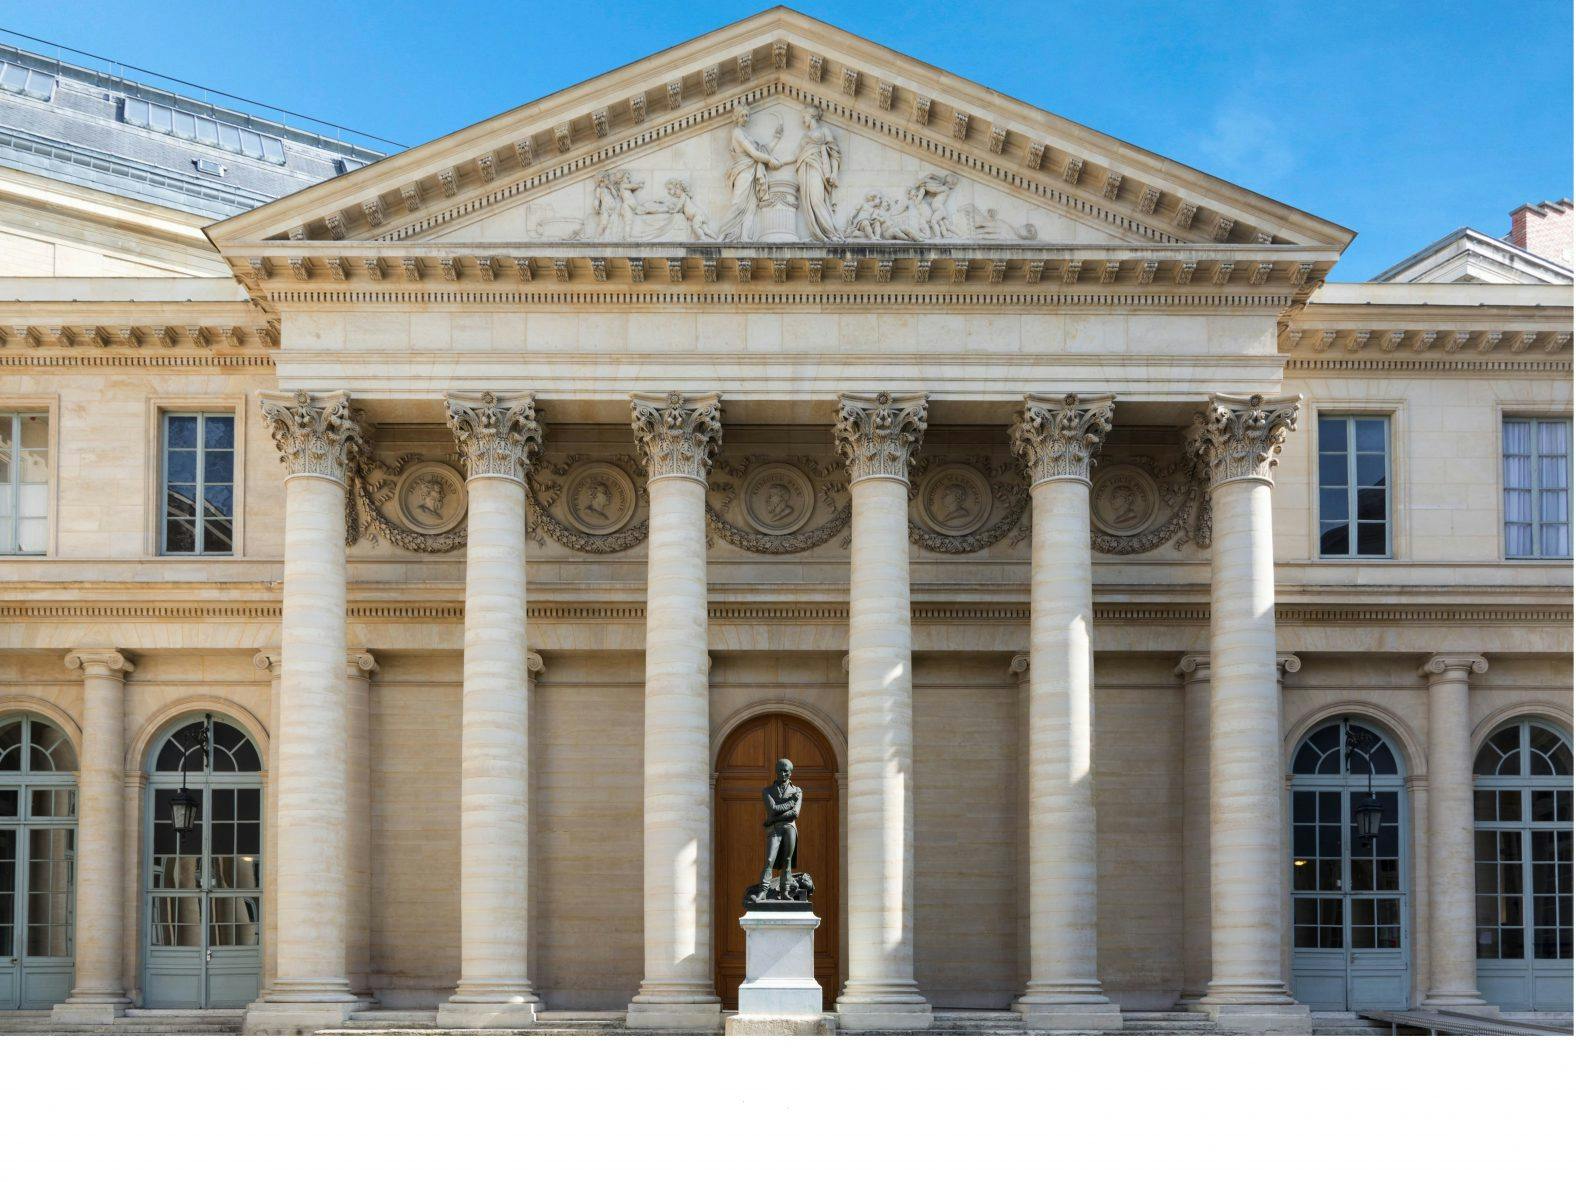 Paris Descartes University